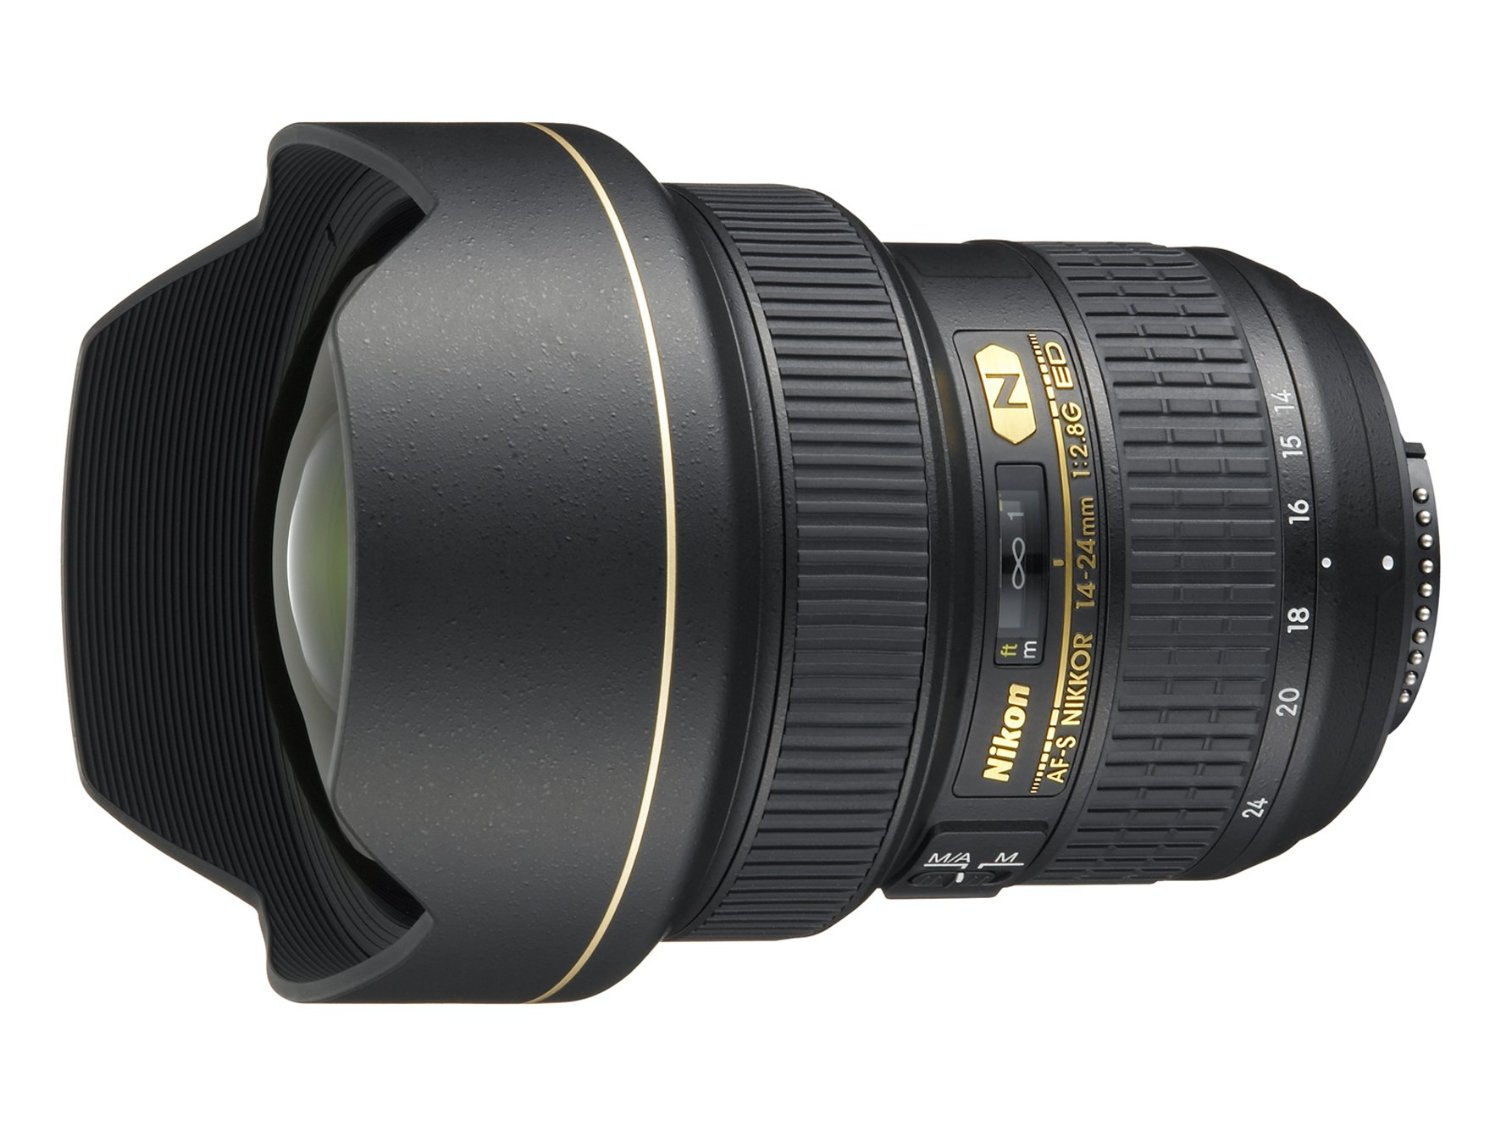 Nikon AF-S FX NIKKOR 14-24mm f/2.8G ED Zoom Lens with A...